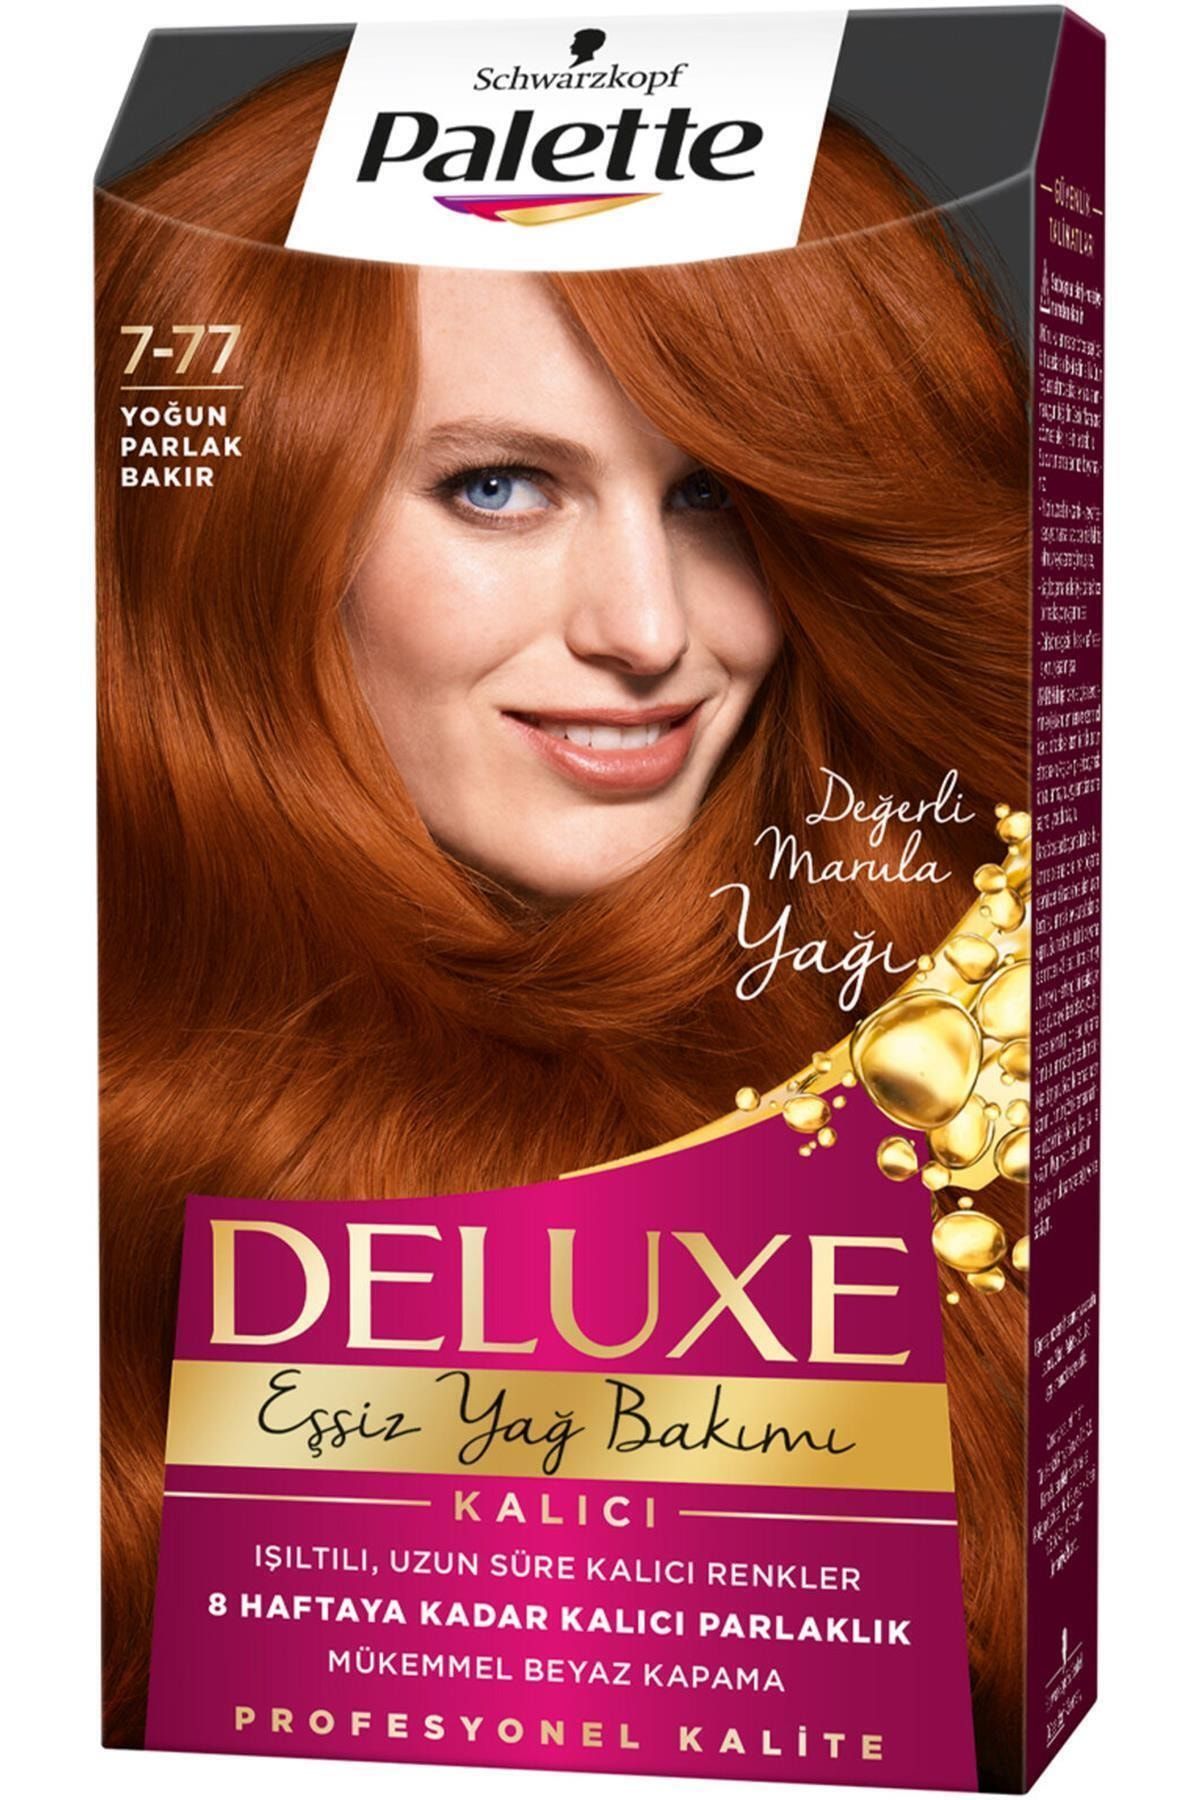 Palette Marka: Deluxe Saç Boyası 7-77 Yoğun Parlak Bakır Kategori: Saç Boyası